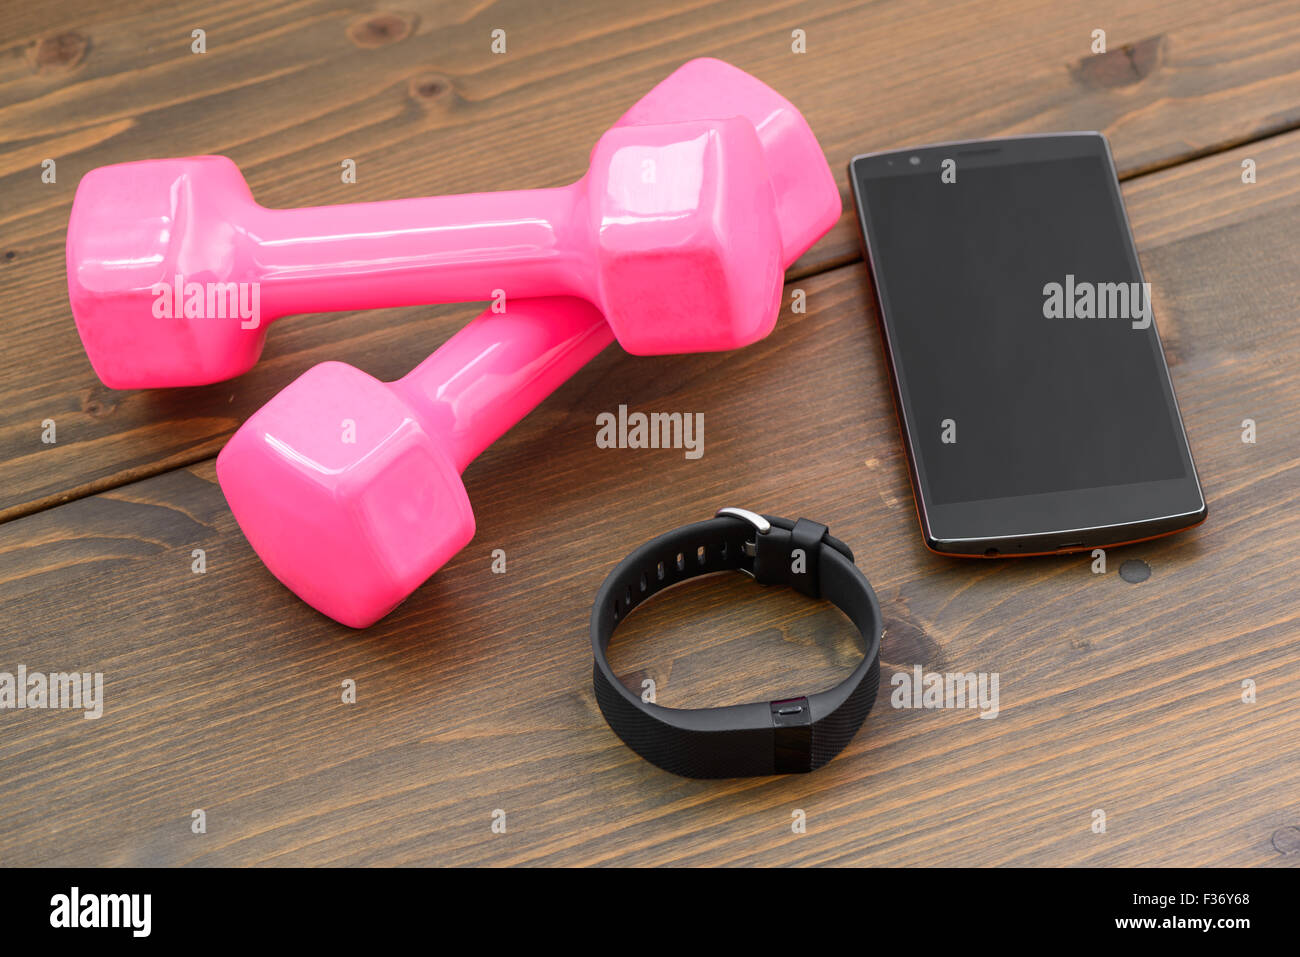 tragbares Gerät, Wirst sehen geben Sports Tracker mit Smartphone und rosa farbigen Hantel auf einem Holzbrett Stockfoto